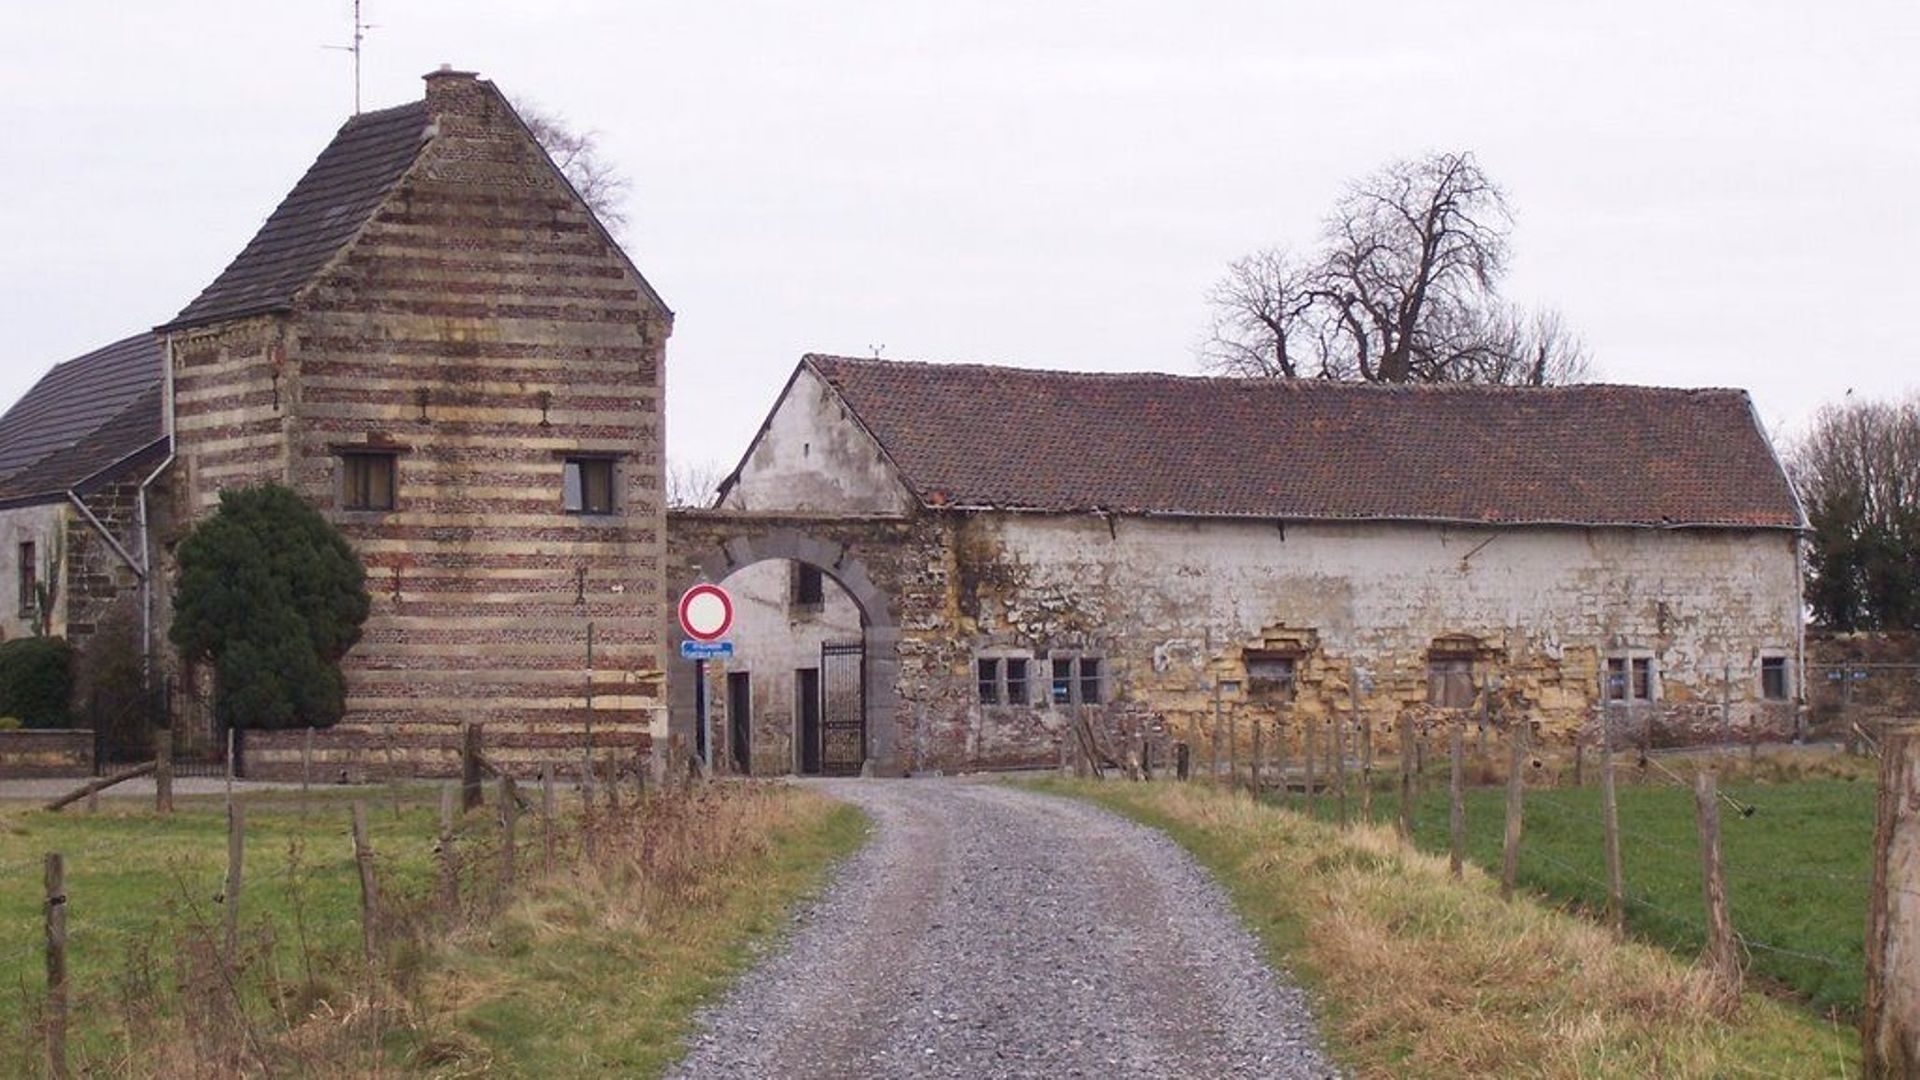 La ferme qui date en partie du 17e siècle devrait héberger, à terme, un point d’accueil d’écotourisme.